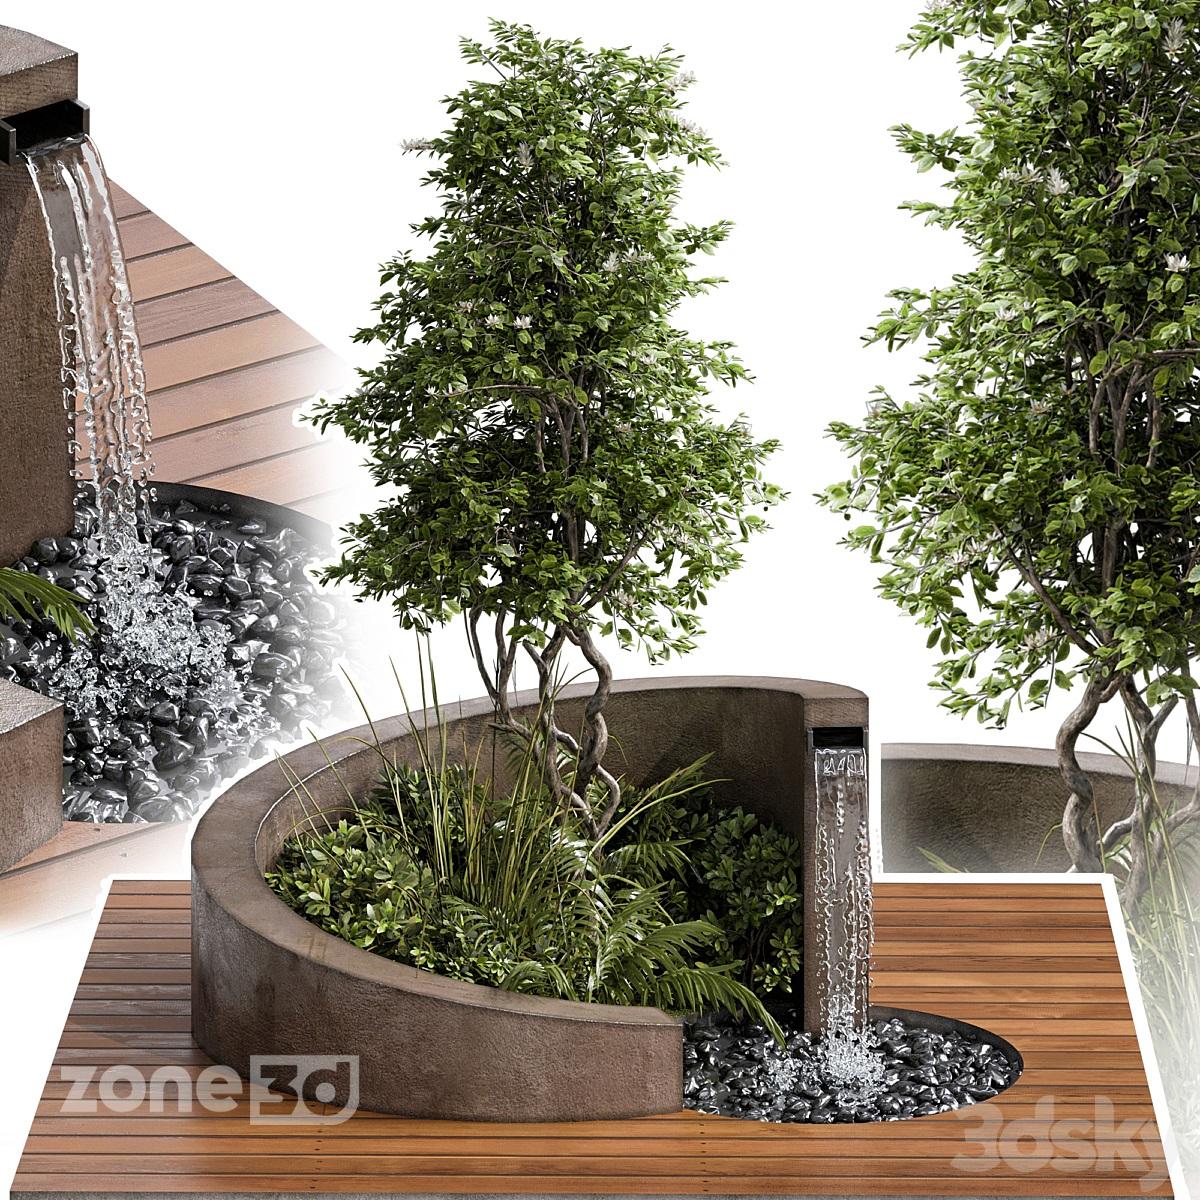 آبجکت ست باغچه به همراه درختچه و آبنمای منحنی با کف چوبی برای محوطه